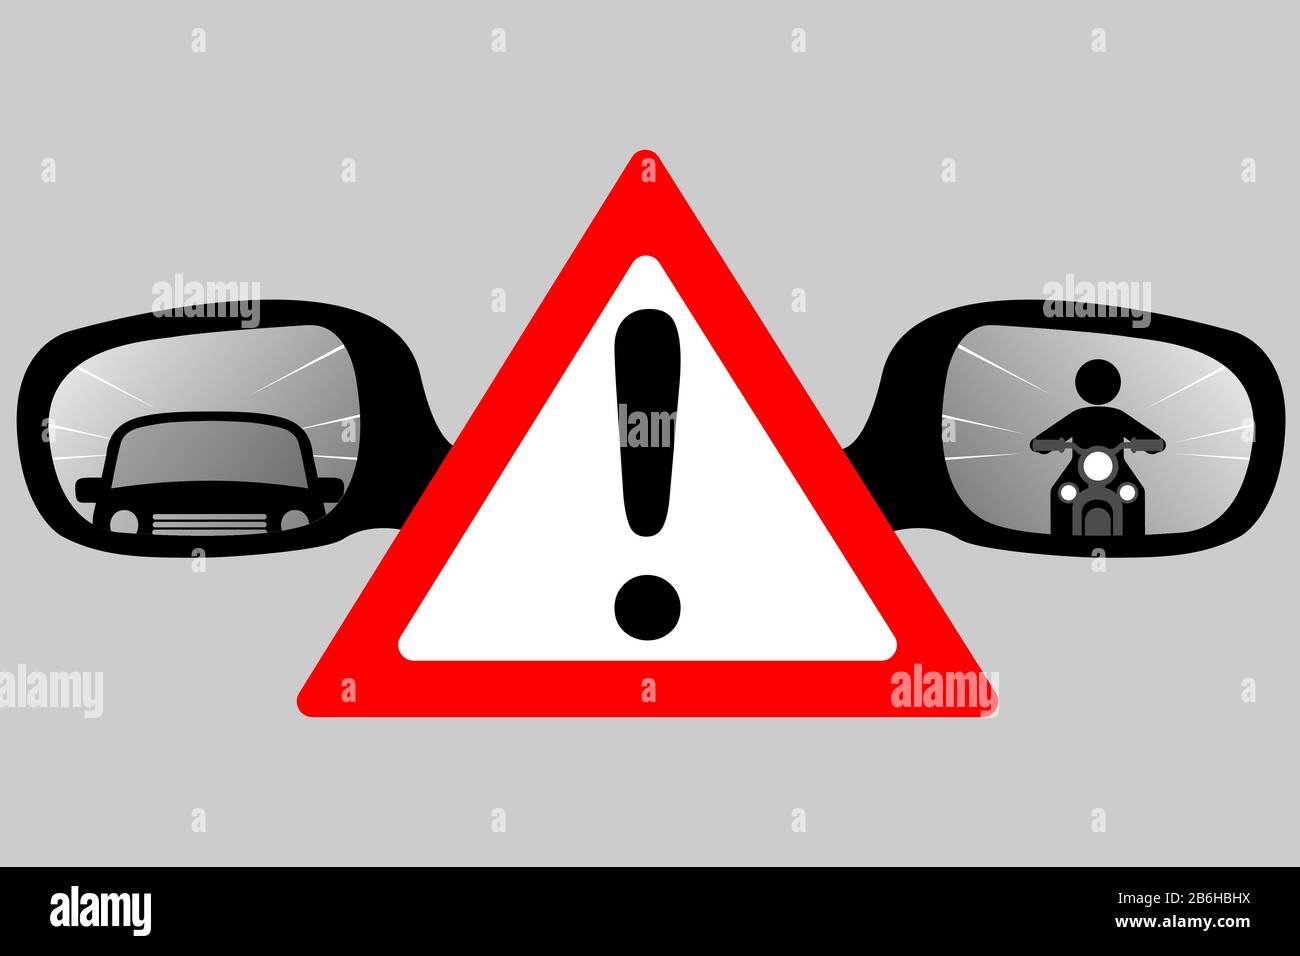 Triángulo rojo con signo de exclamación y espejos retrovisores con reflejo de automóvil y motocicleta Ilustración del Vector